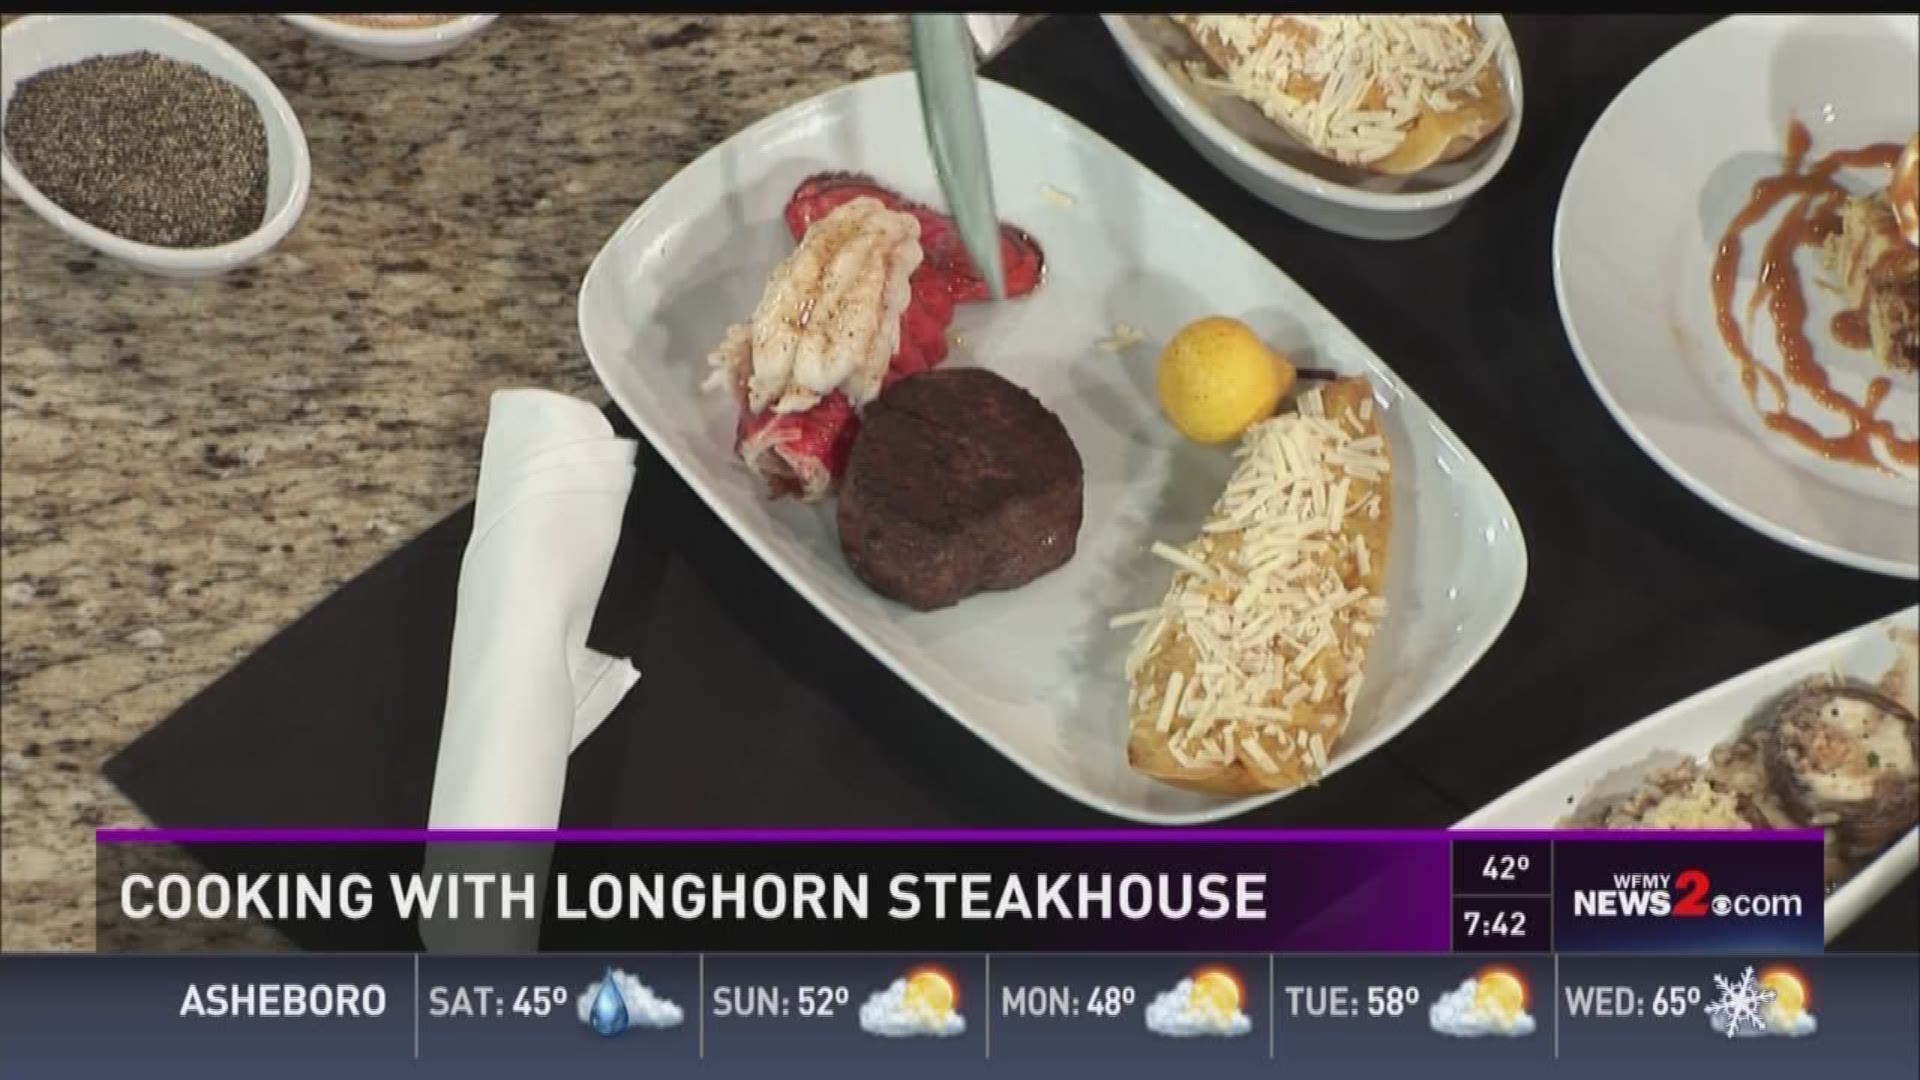 LongHorn Steakhouse (@longhornsteaks) • Instagram photos and videos